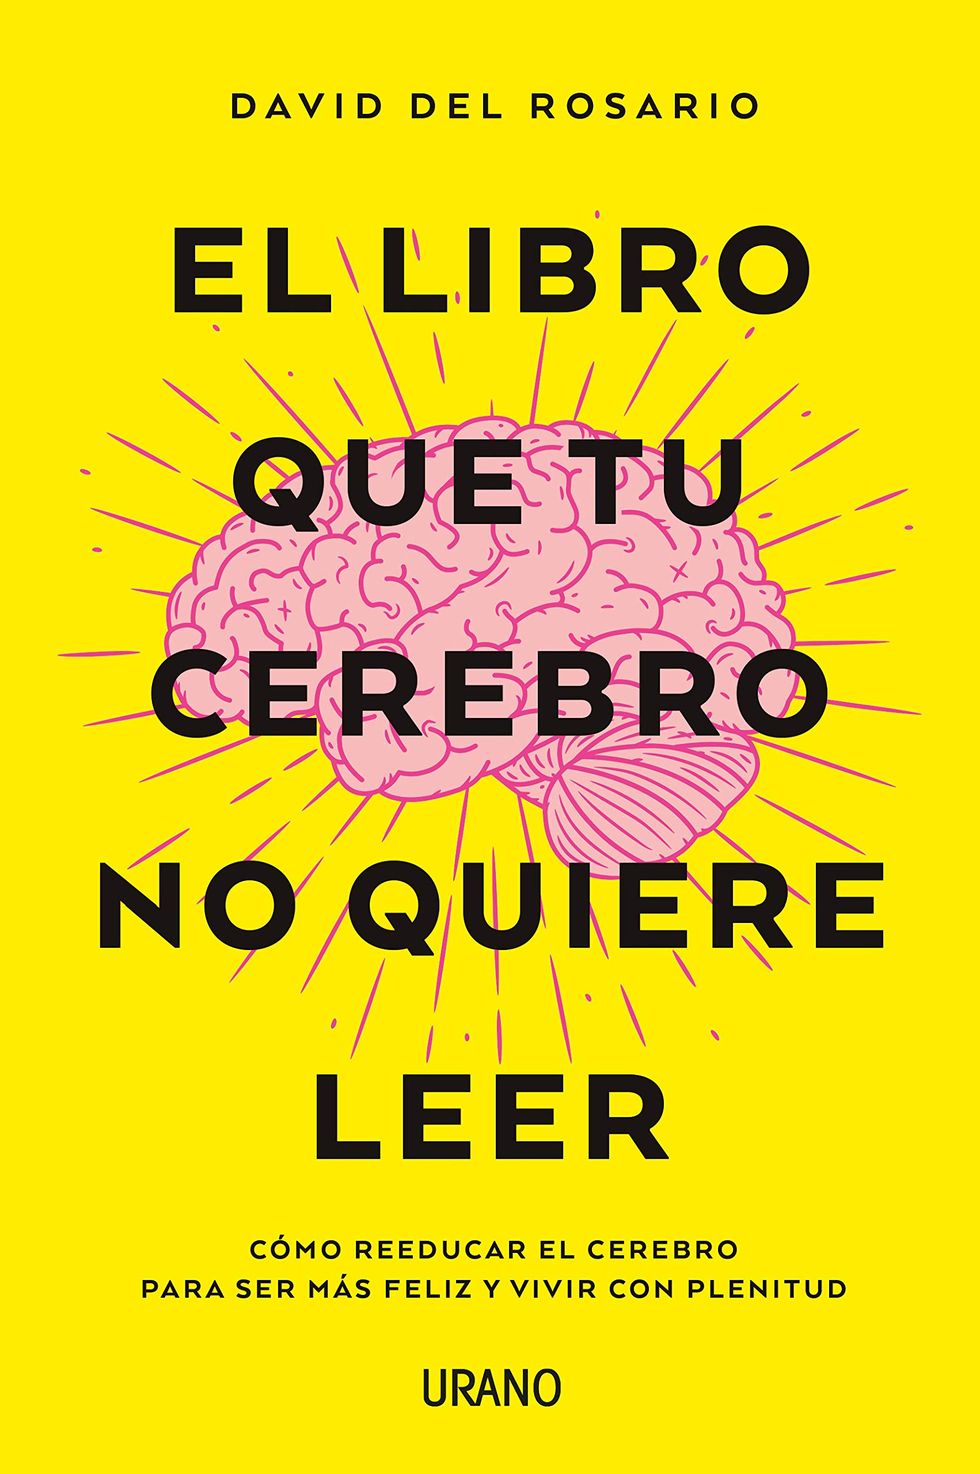 'El libro que tu cerebro no quiere leer'